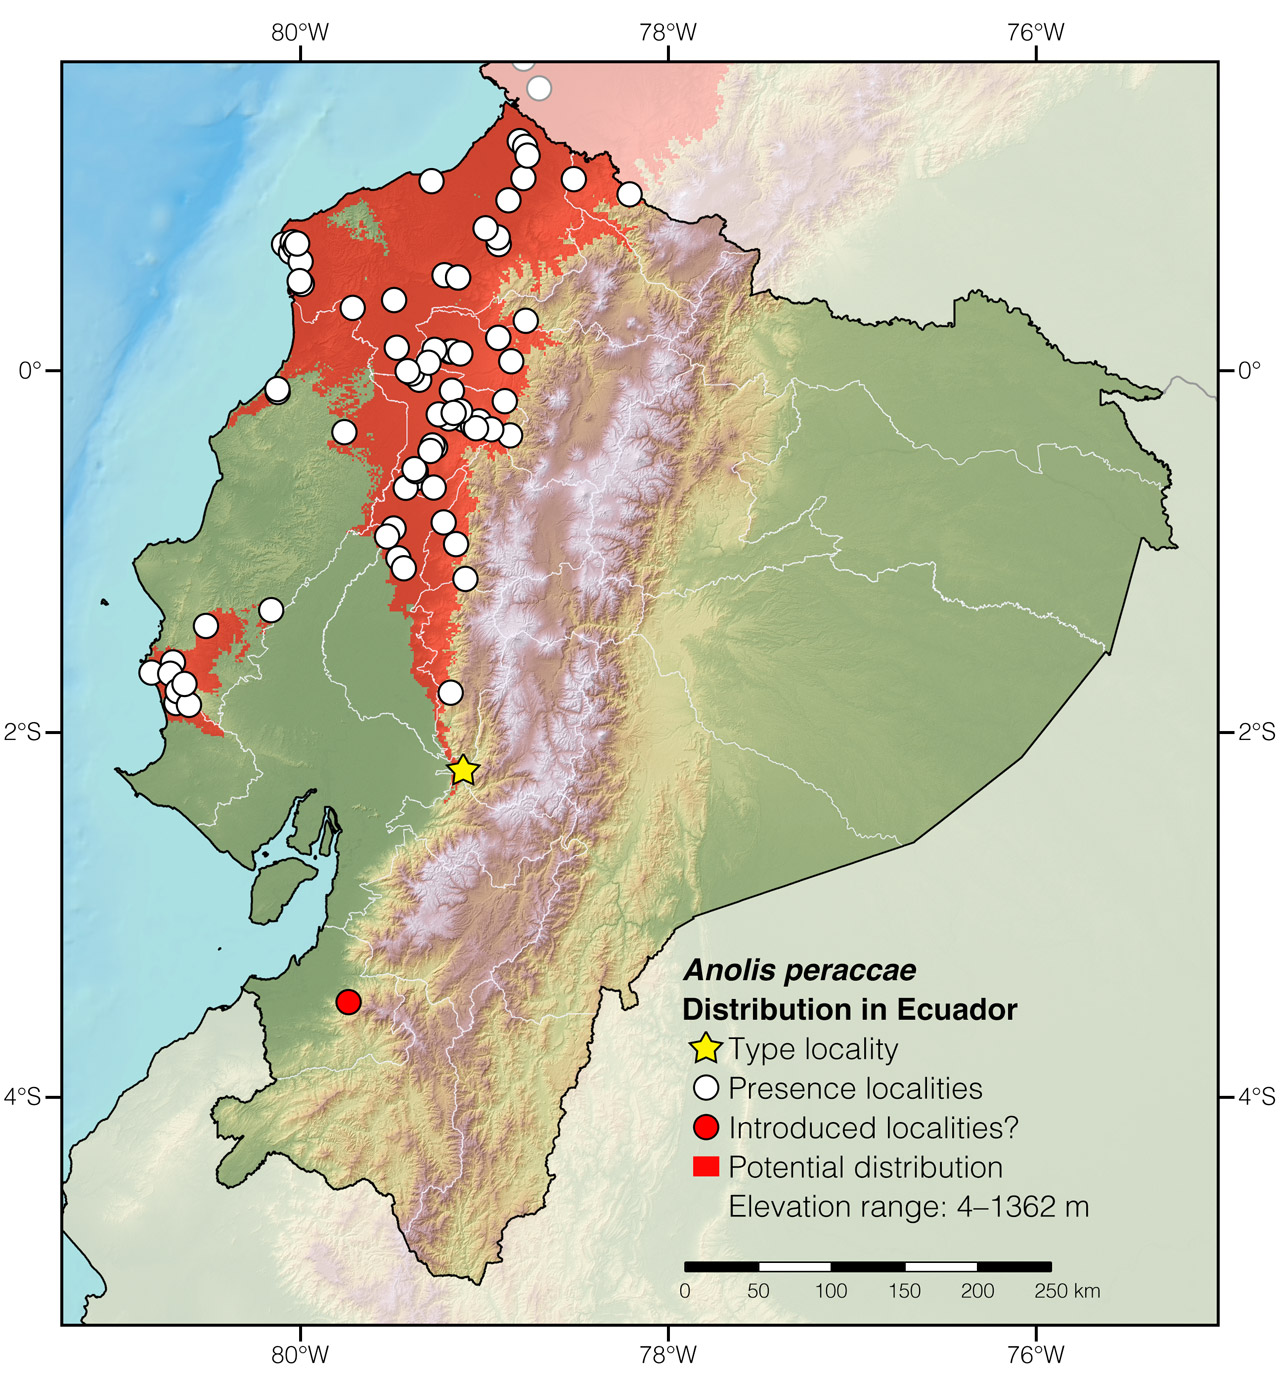 Distribution of Anolis peraccae in Ecuador